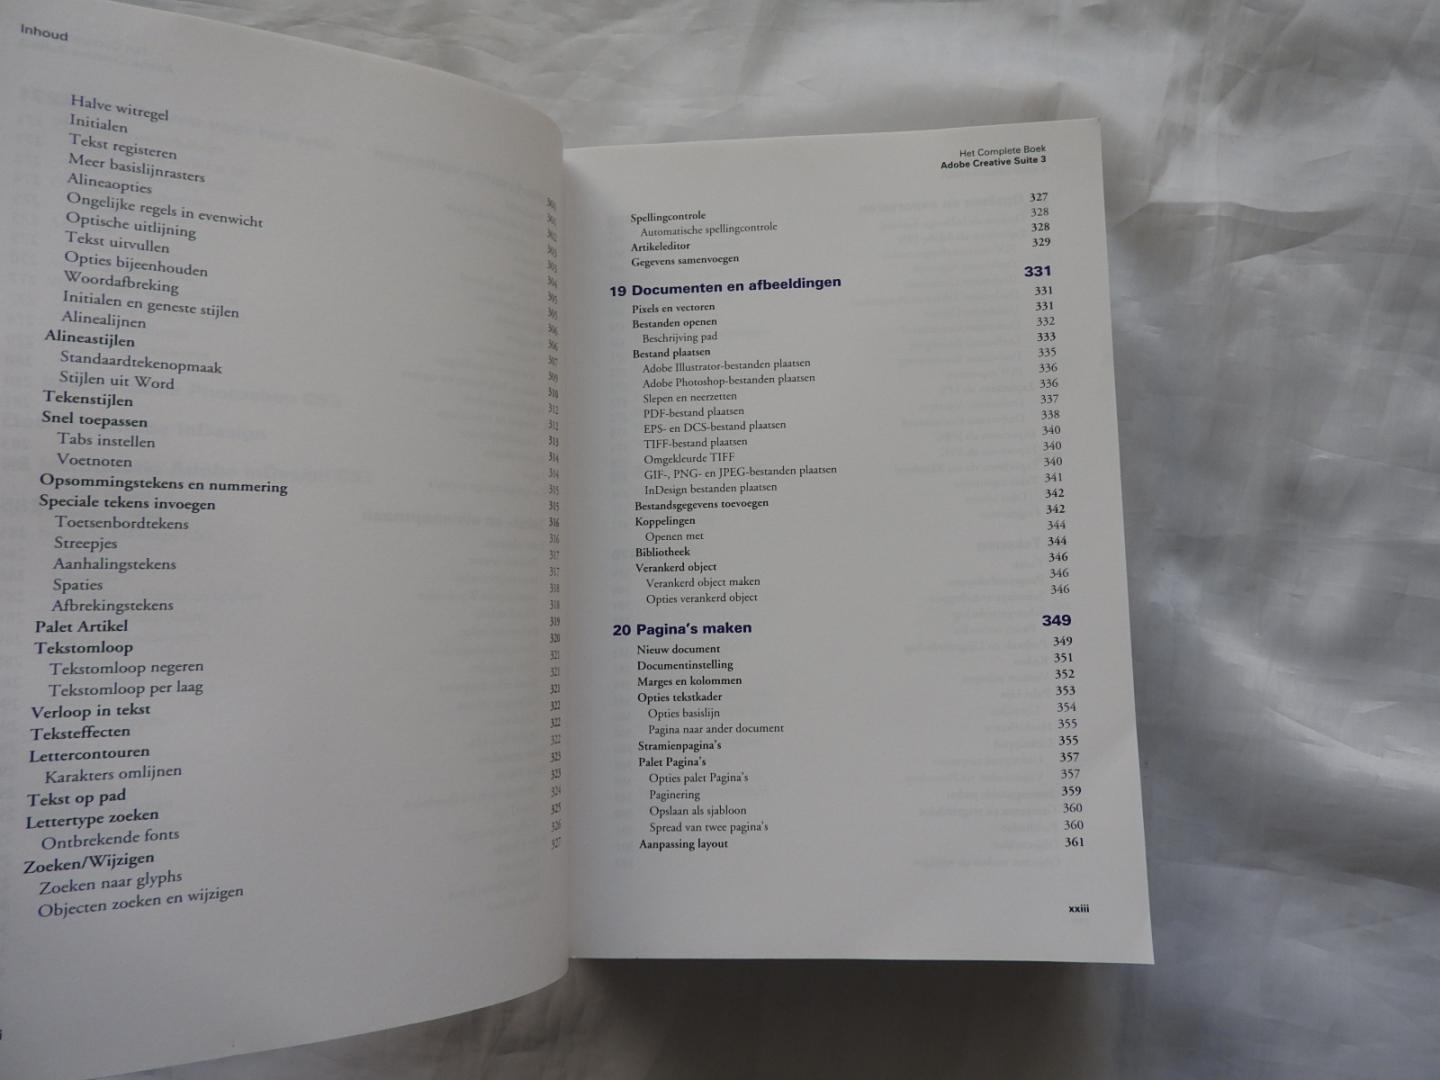 Erwin Olij E - Couprie - Maas peter - Adobe Creative Suite 3 Design Edition - het Complete boek